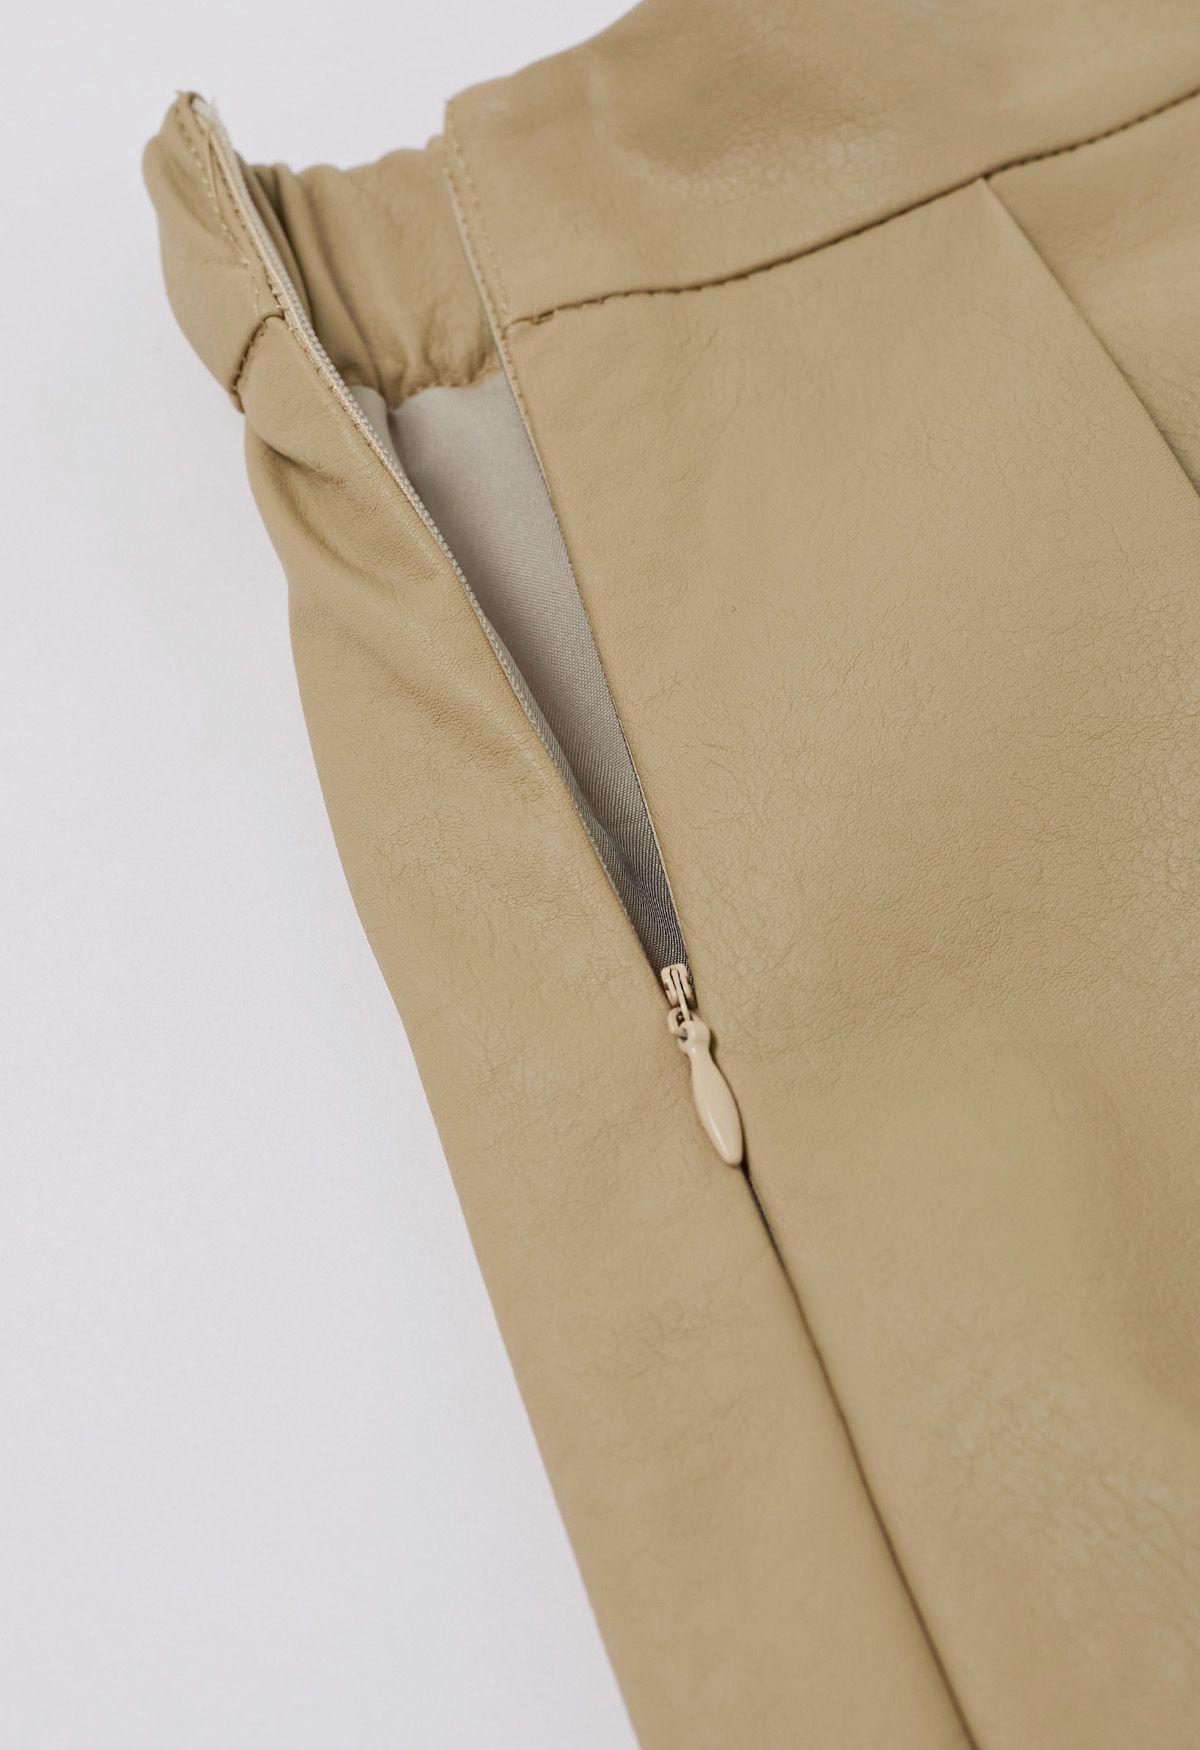 Falda midi plisada de piel sintética en color caqui